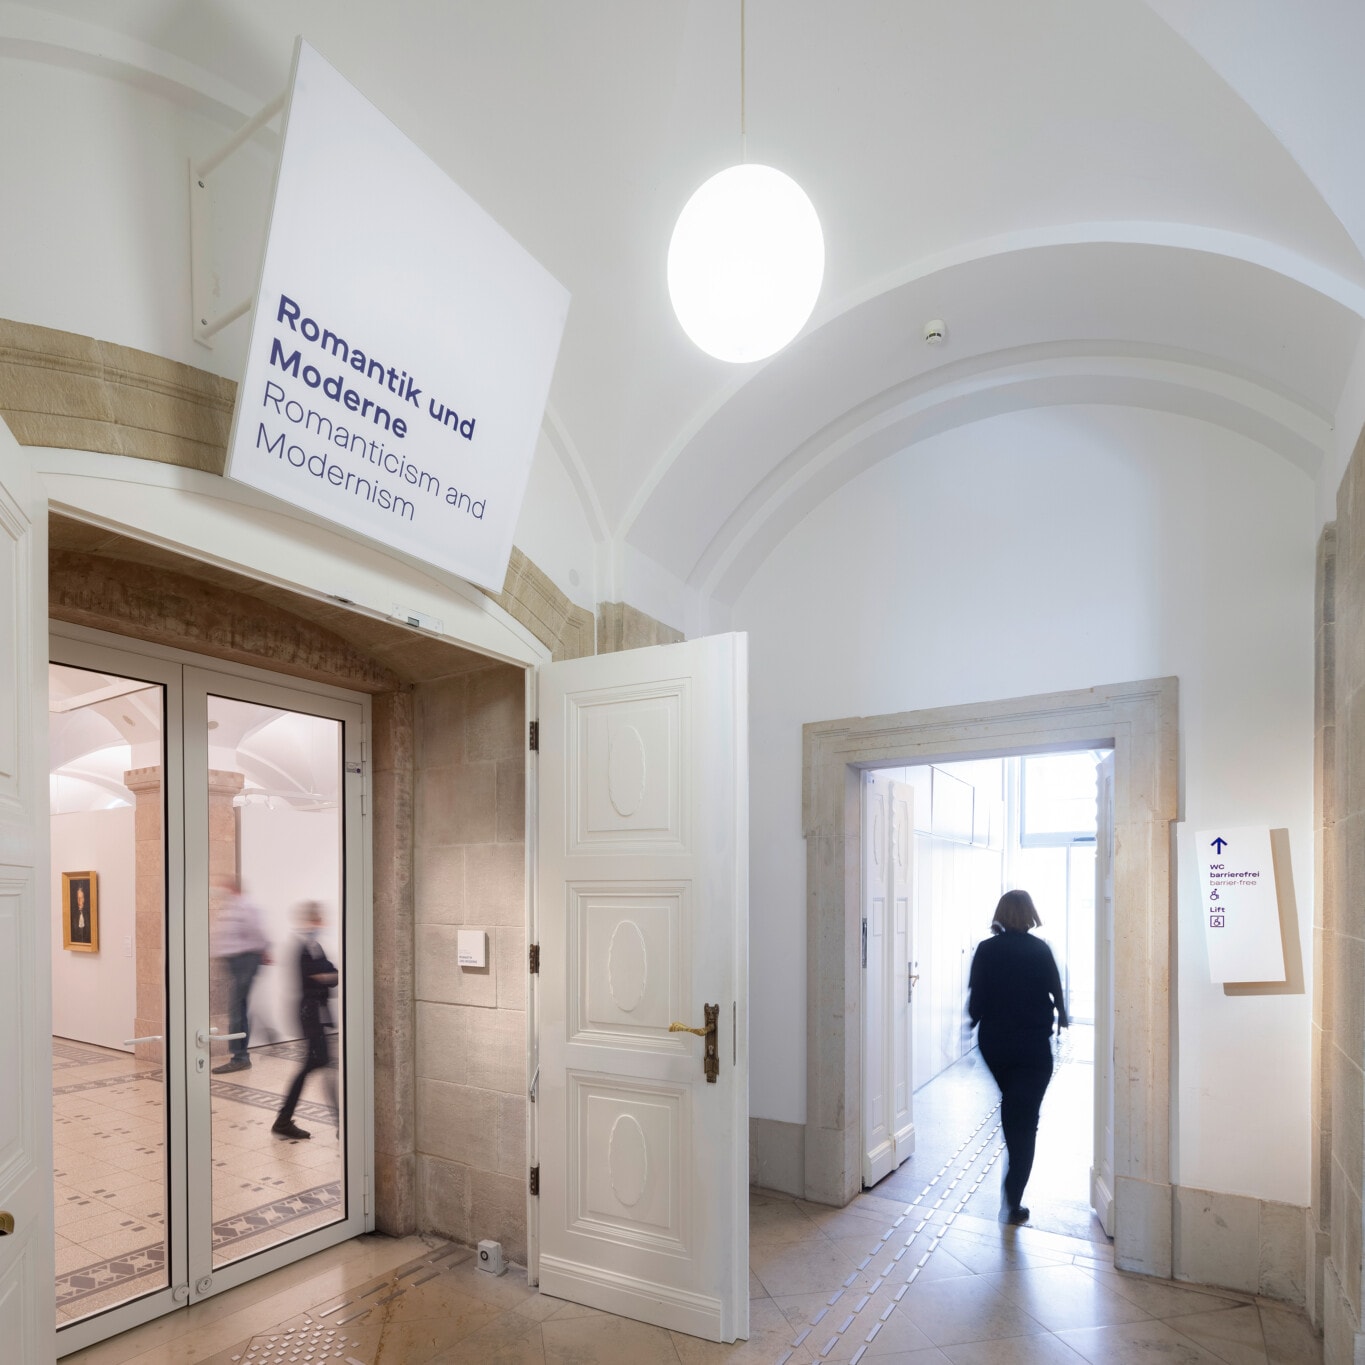 Kunstsammlungen Chemnitz Leitsystem Ausstellungstitel am Eingang und taktiles Bodenleitsystem